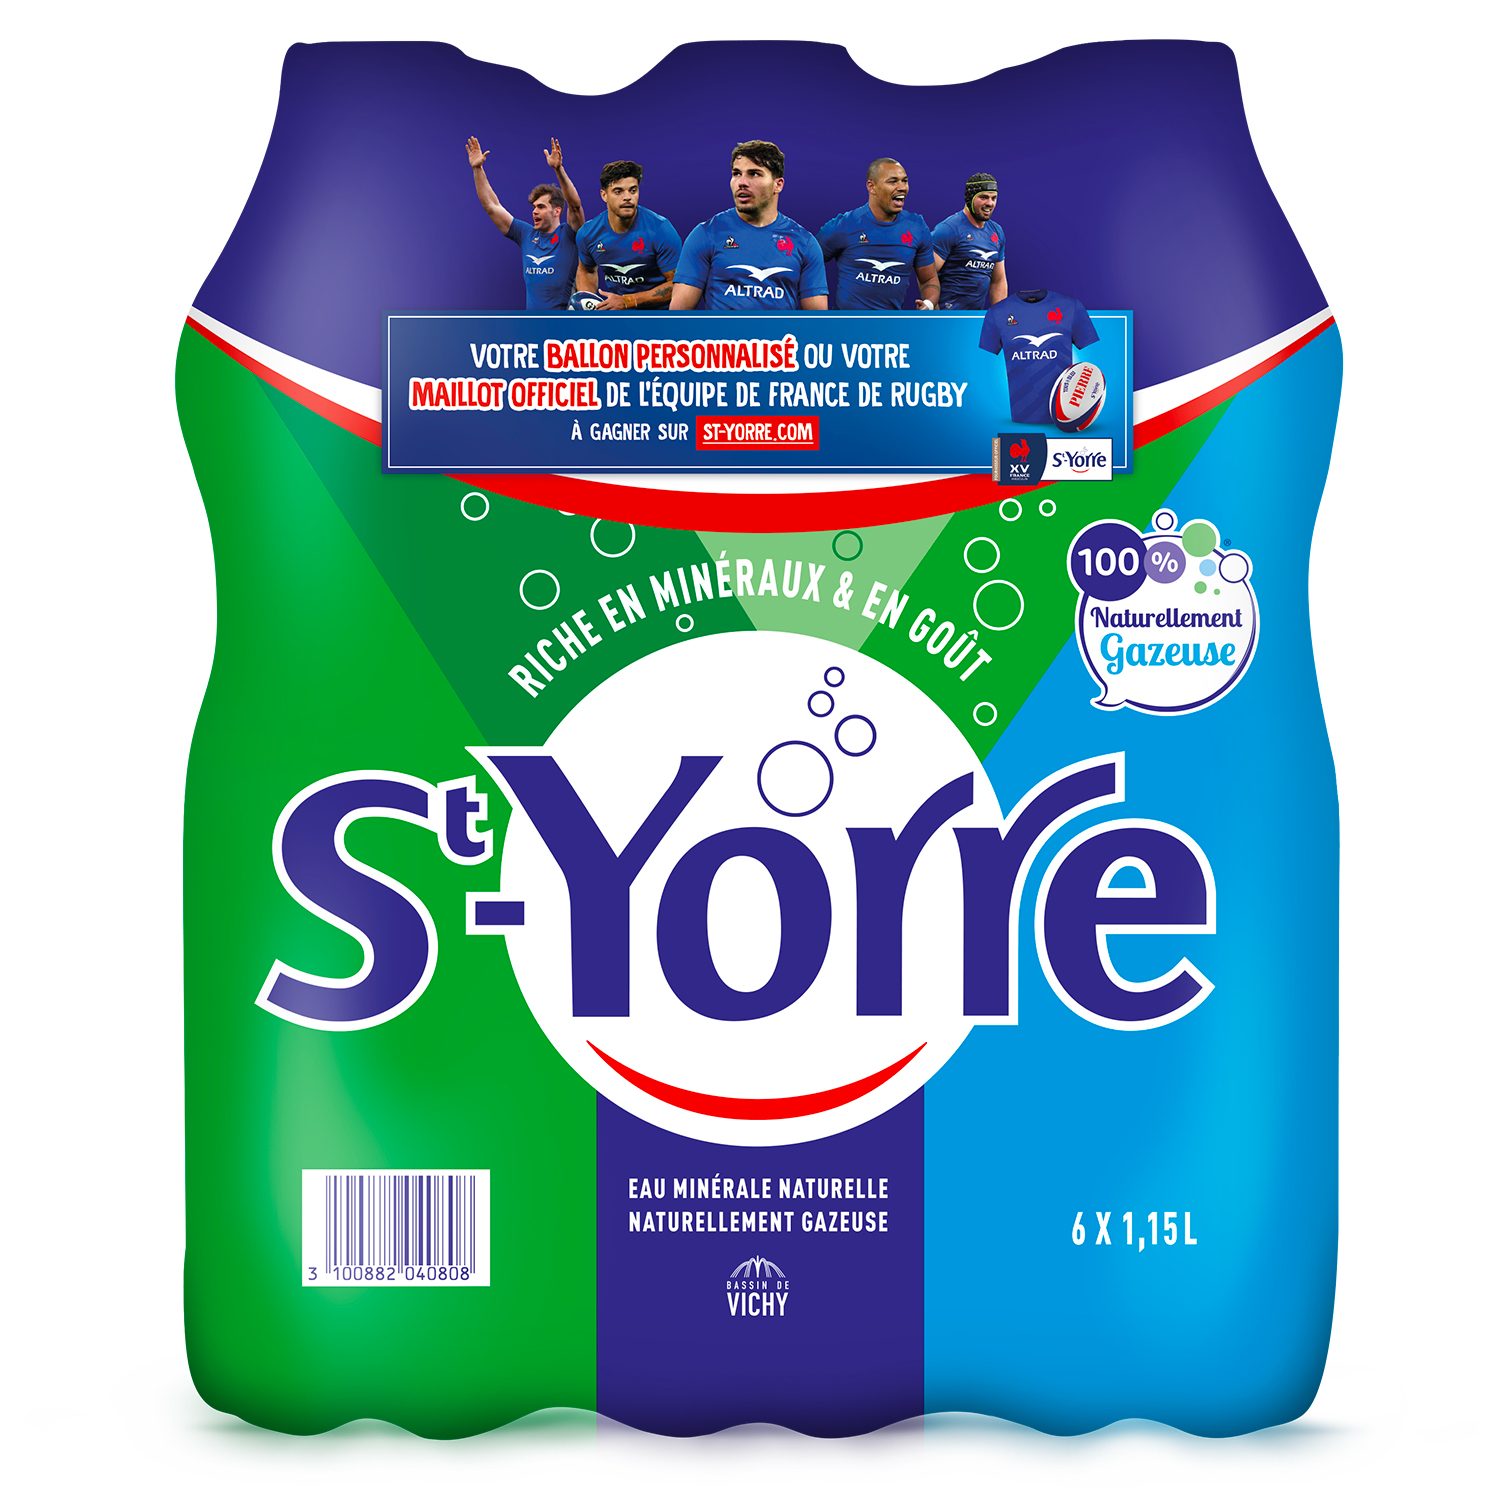 St-yorre – 6x1,15l